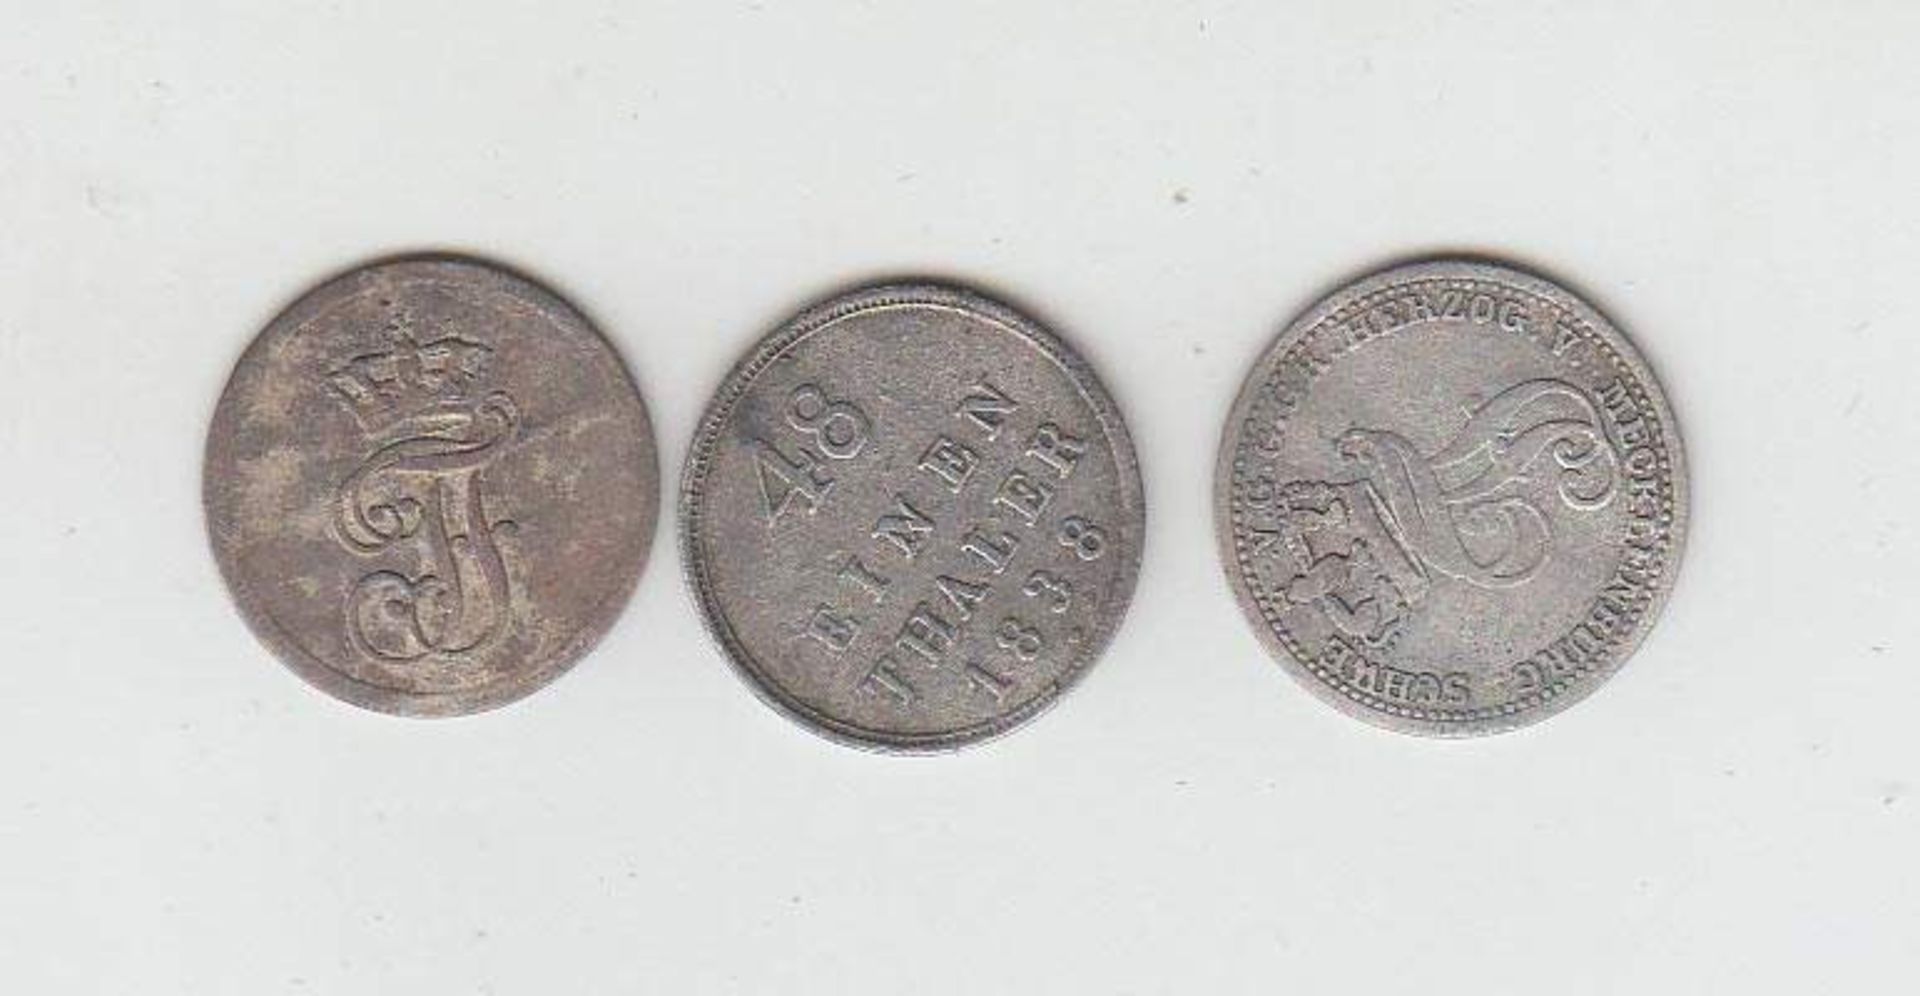 3 Münzen1 Pfennig Mecklenburg Schwerin 1831, 1/48 Taler Mecklenburg Schwerin 1848 u. 1/48 Taler